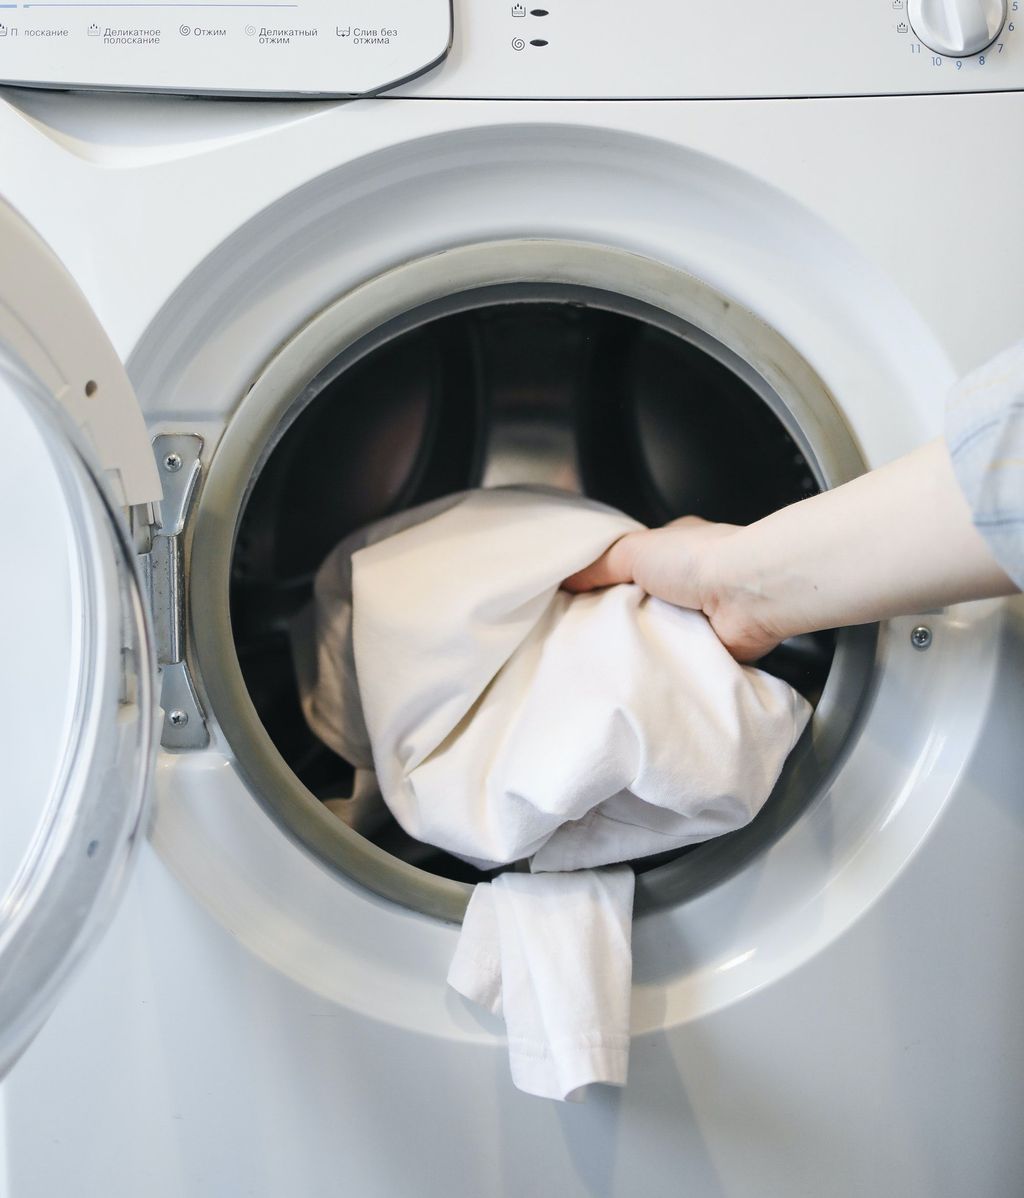 Limpia la goma de la lavadora con frecuencia. FUENTE: Pexels